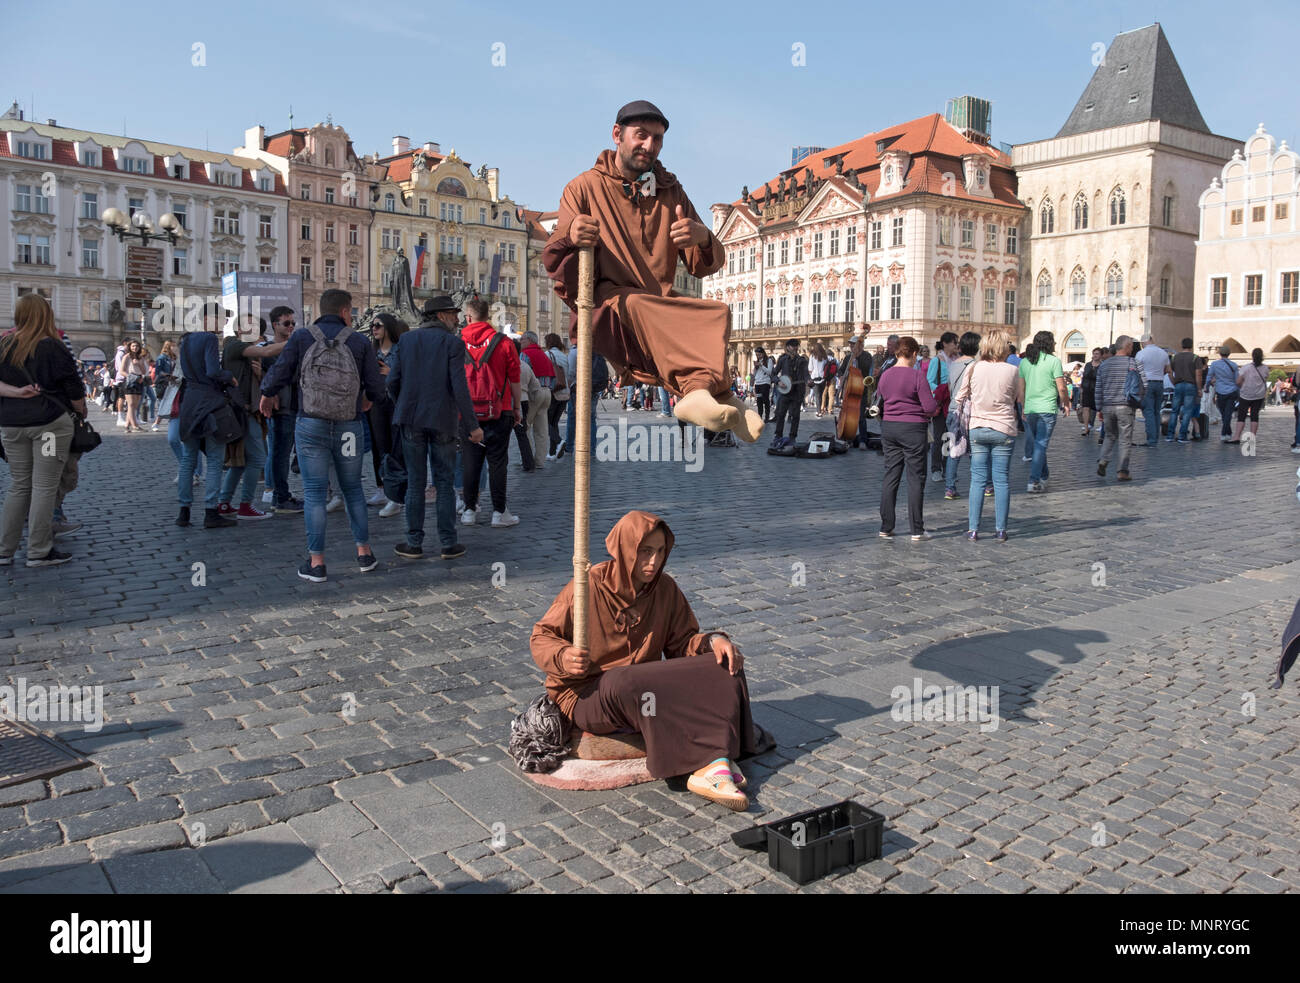 Les amuseurs publics dans la vieille ville de Prague qui semble être une loi faisant de la lévitation. République tchèque. Banque D'Images